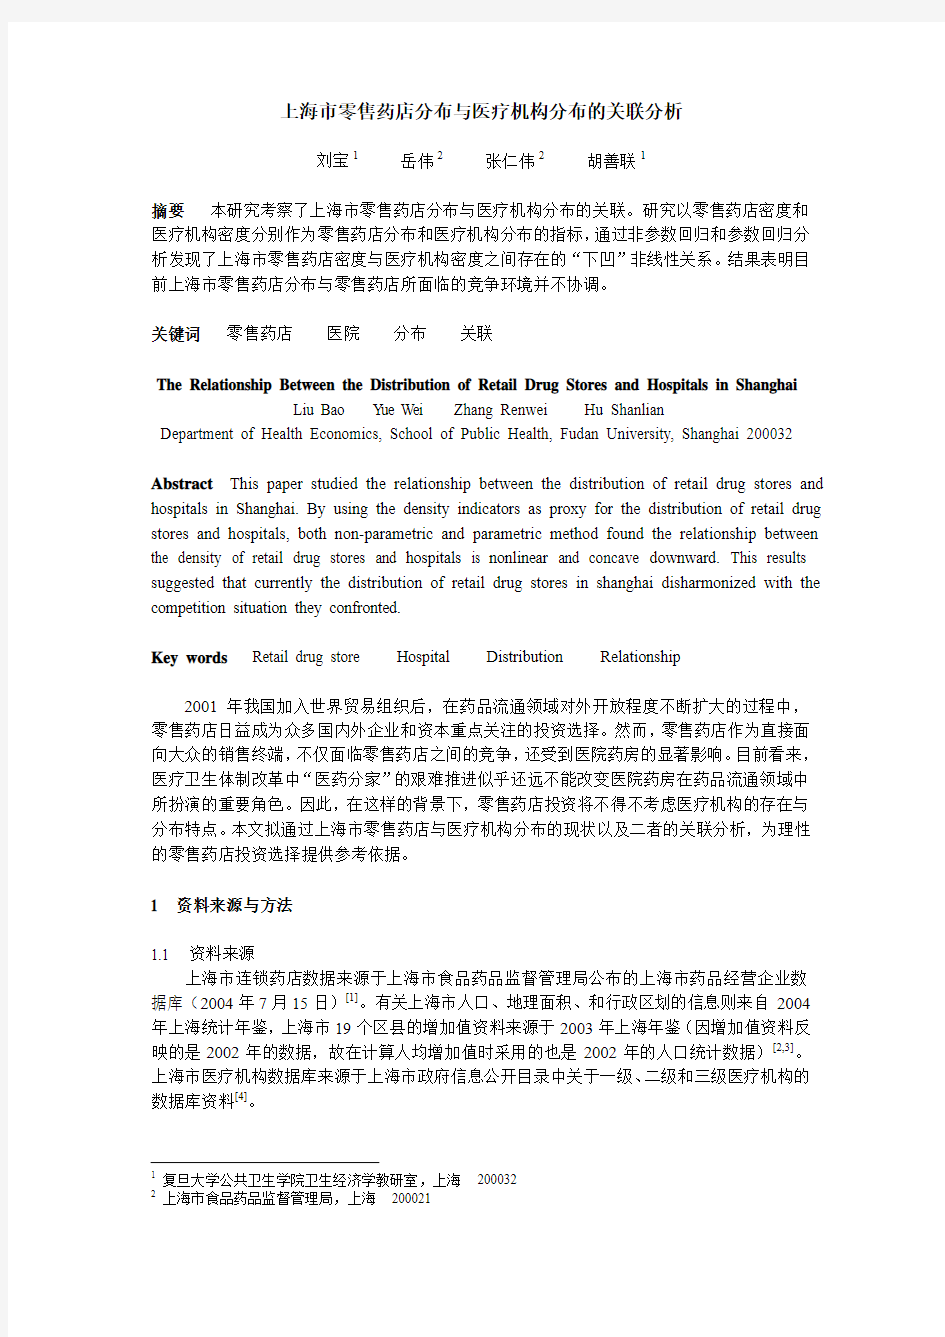 上海市零售药店分布与医疗机构分布的关联分析